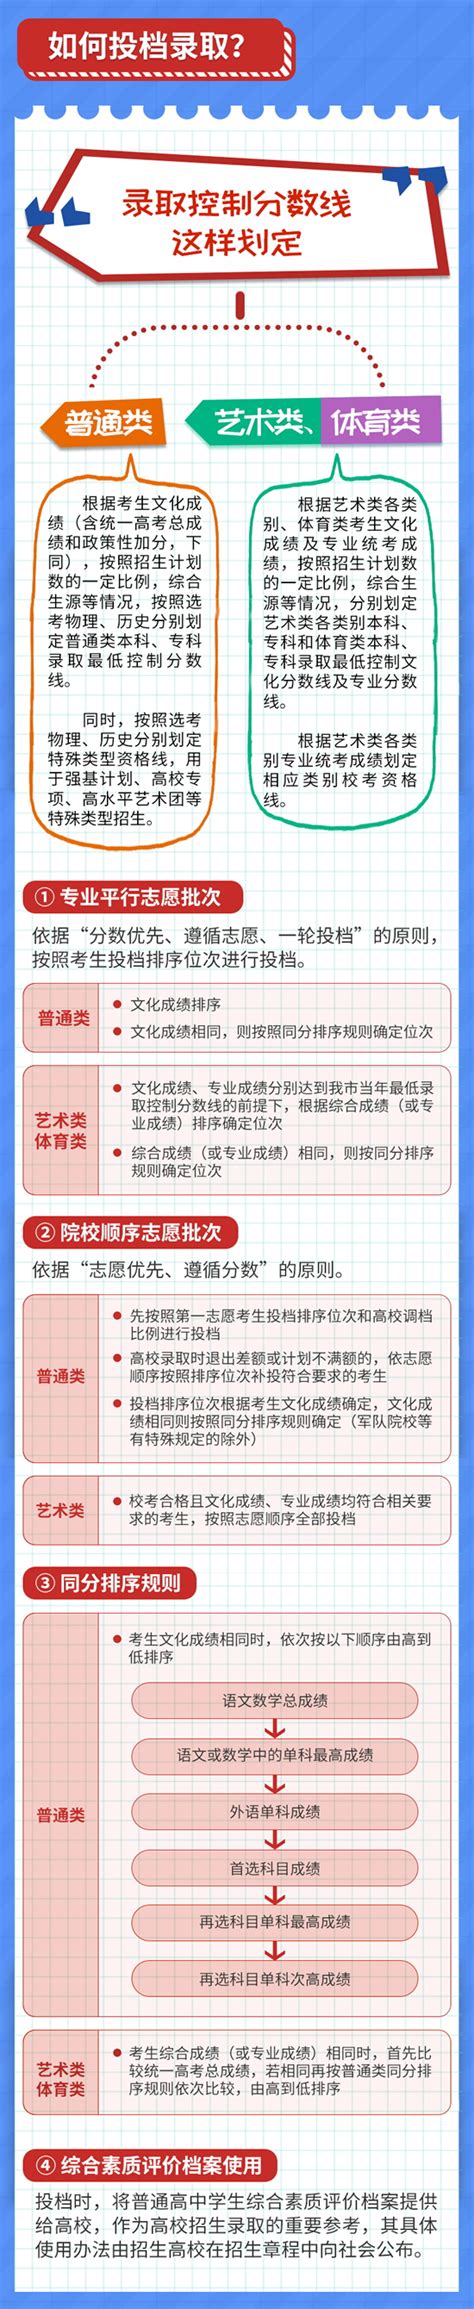 2021年重庆高考志愿填报及投档录取指南_2021高考网